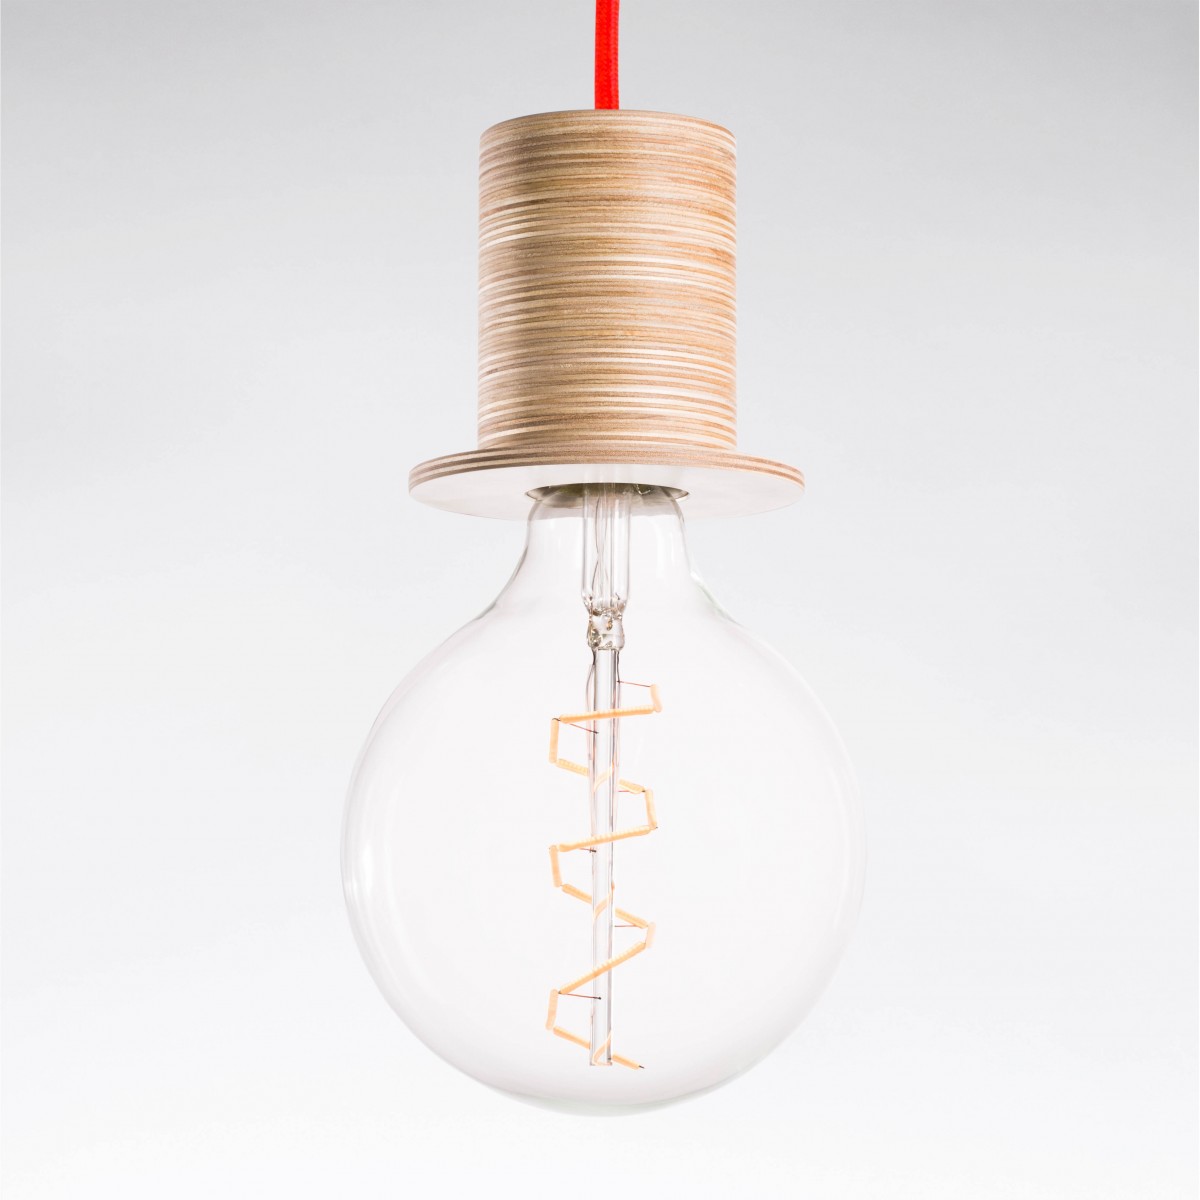 Lichtliebe Pendelleuchte "Fafoo" in weiß und neonorange inkl. Edison Spiral LED im Retro Design mit nur 1,8 Watt